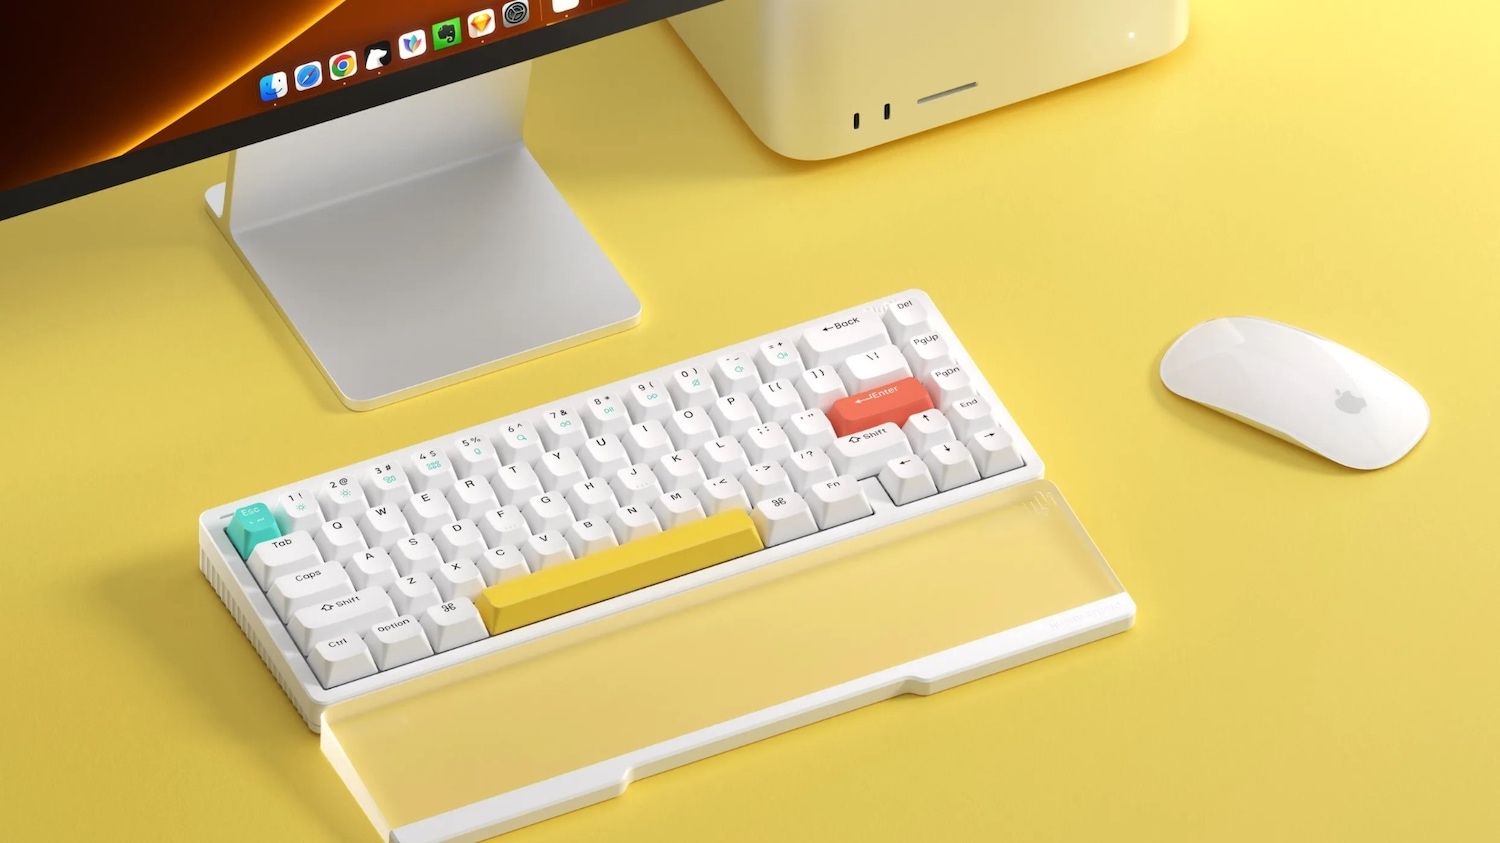 5 Best Wireless Mechanical Keyboards for Mac